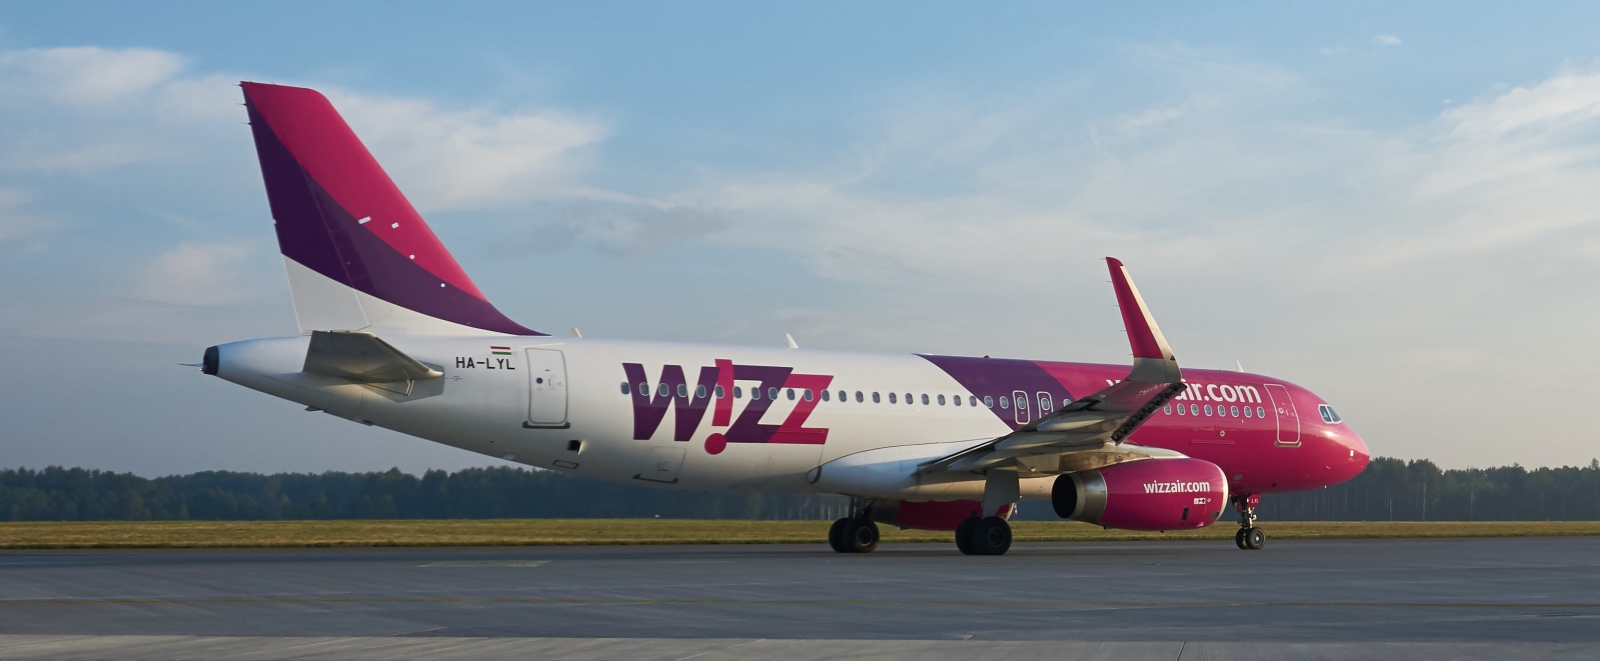 Det ungarske lavprisselskapet Wizz Air frakter nå flere passasjerer enn konkurrenten Ryanair.